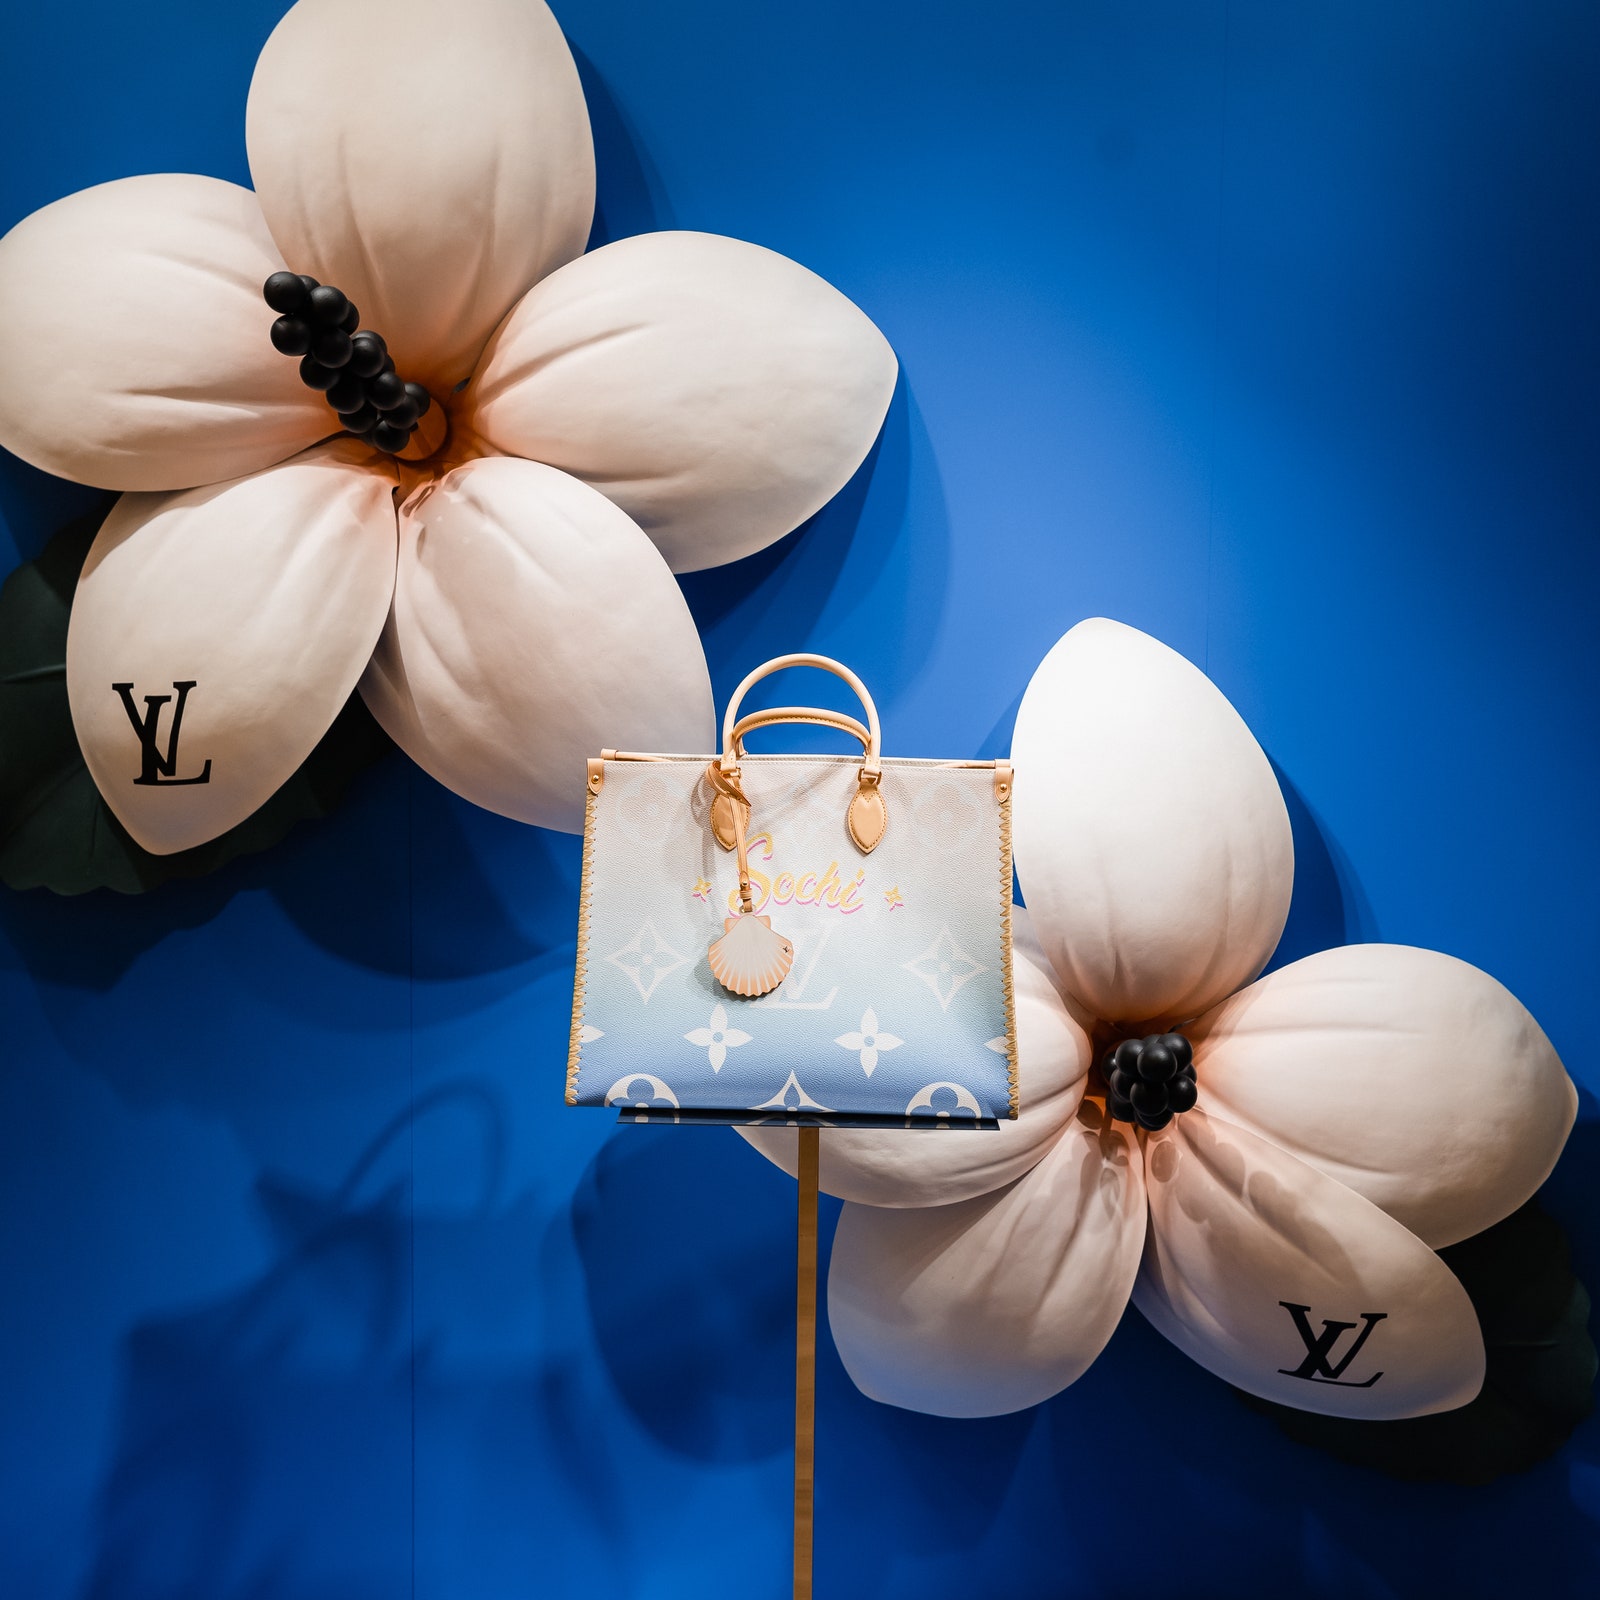 Louis Vuitton впервые представили сумку с названием российского города (догадайтесь какого!)